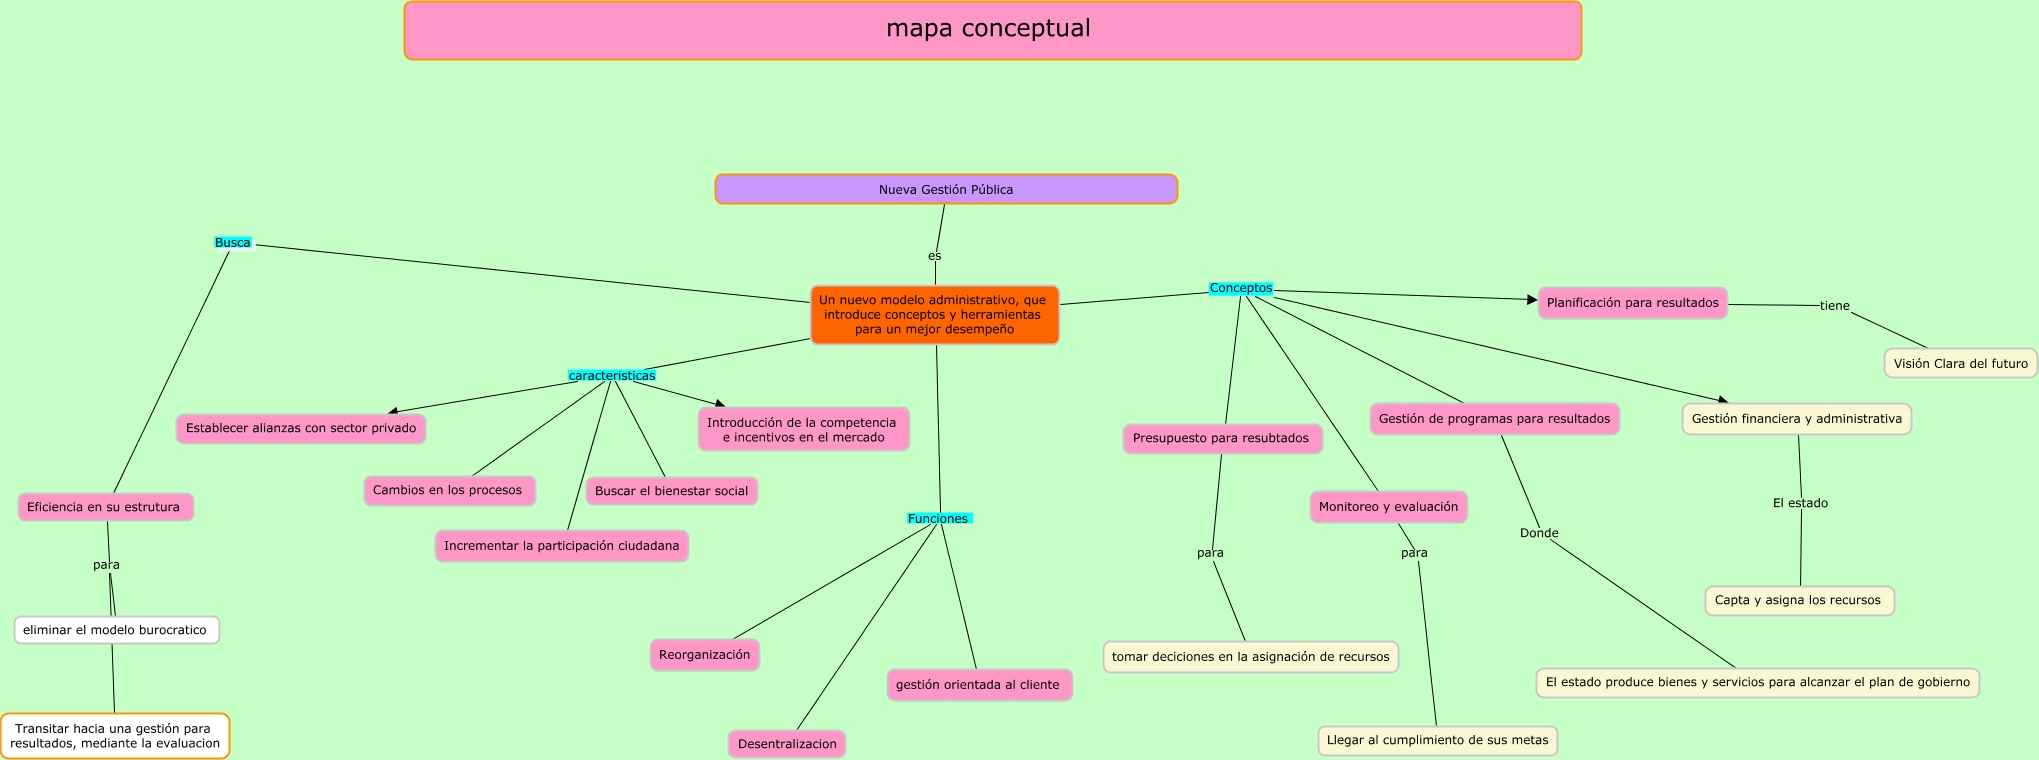 mapa conceptual - Nueva gestión pública